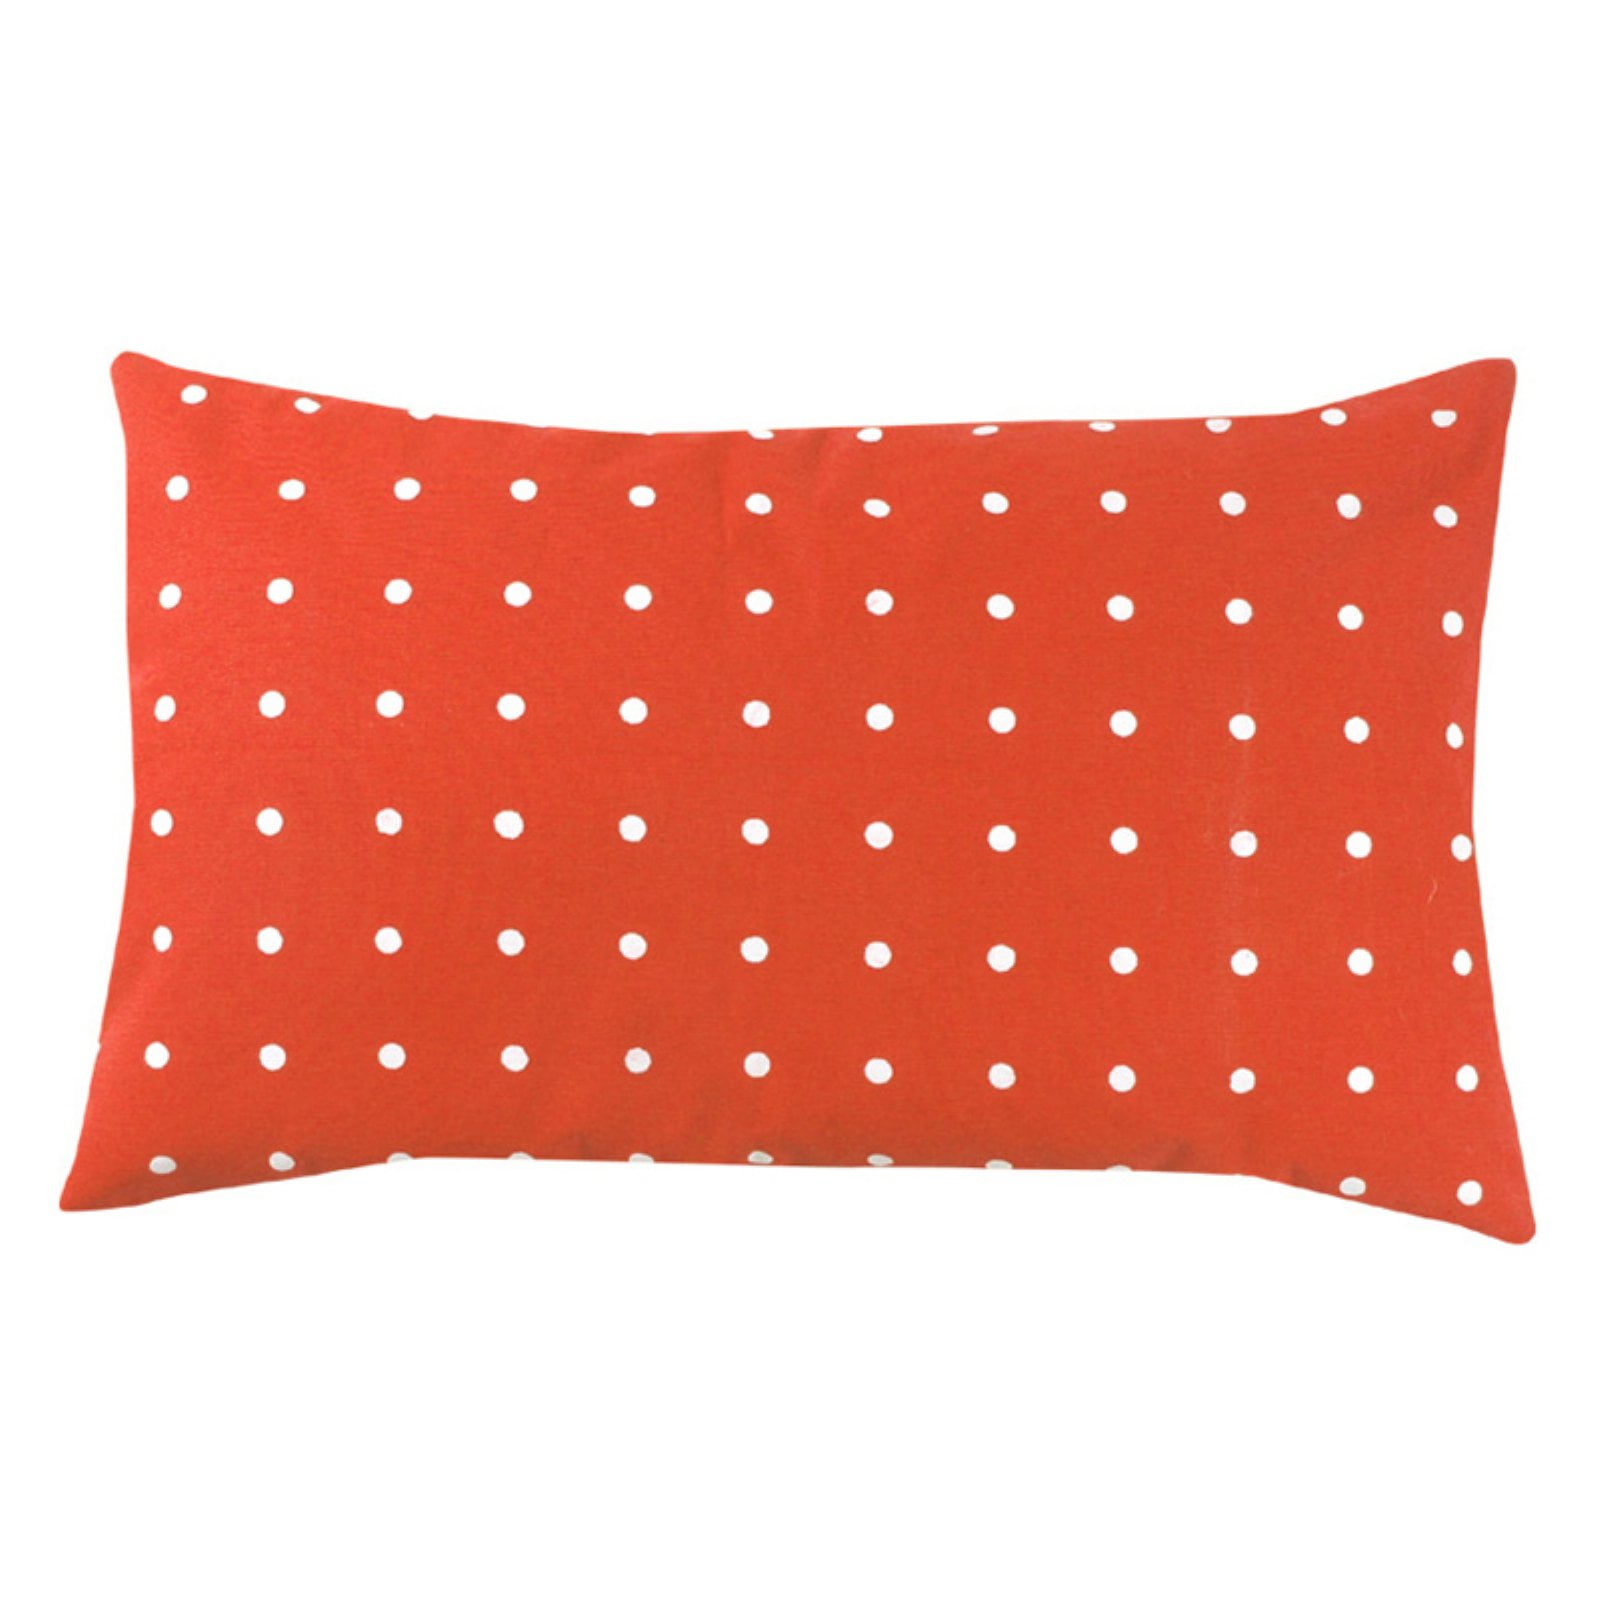 Milton Greens Stars Tallulah Throw Lumbar Pillow - Set of 2 - Walmart.com